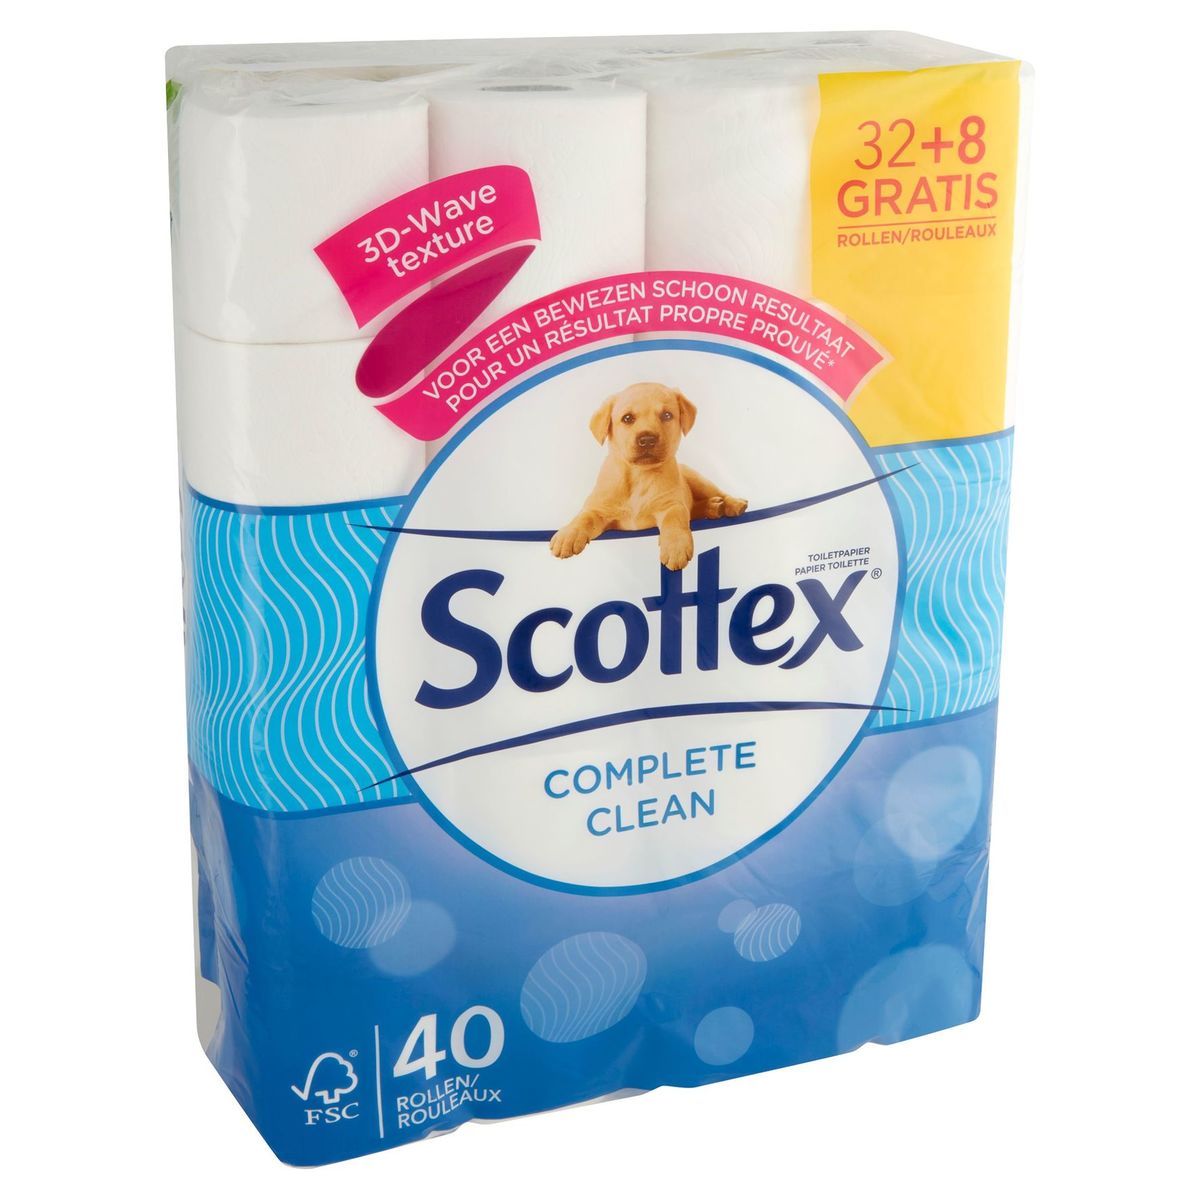 Scottex Papier Toilette Complete Clean 32+8 Gratis Rouleaux